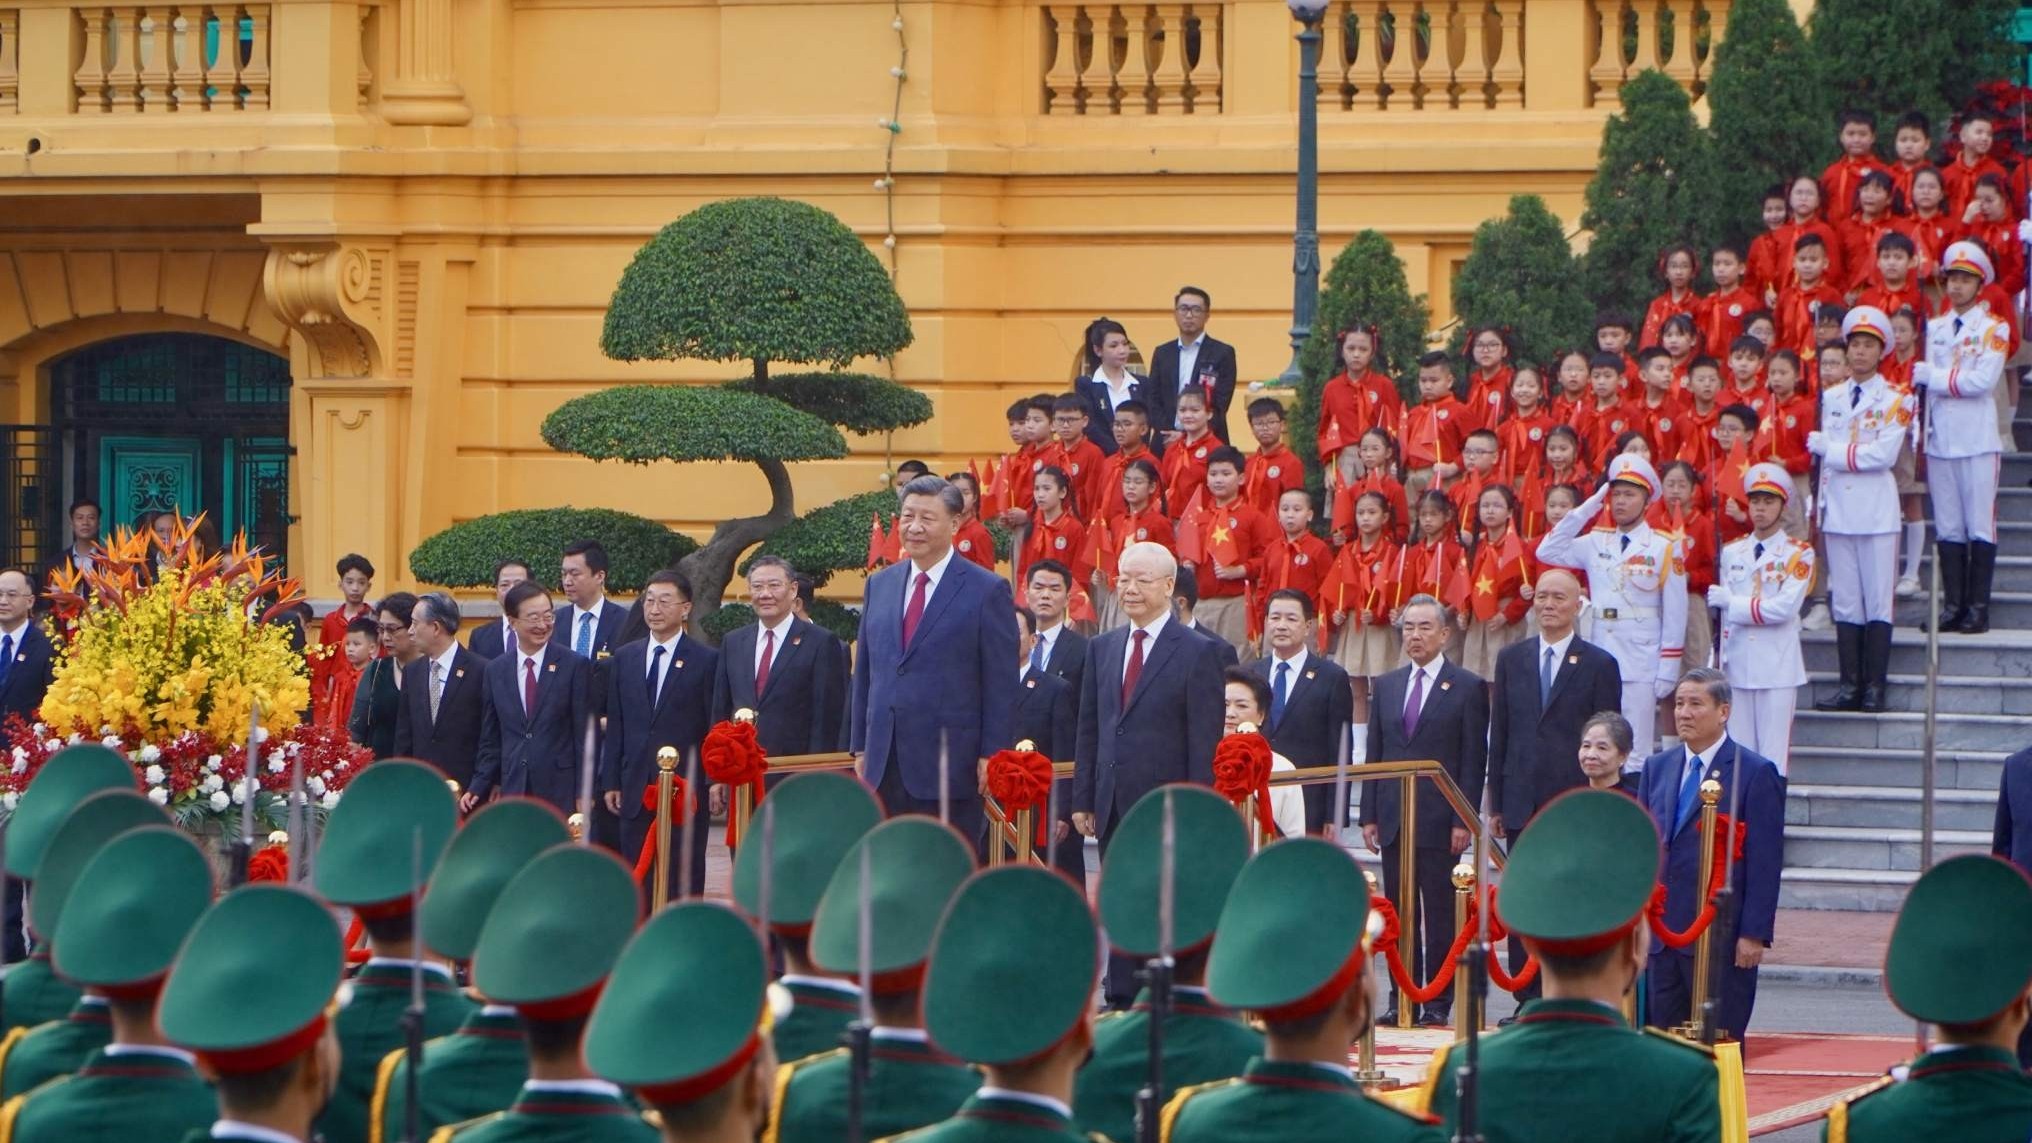 21 loạt đại bác rền vang đón Tổng Bí thư, Chủ tịch Trung Quốc Tập Cận Bình và Phu nhân